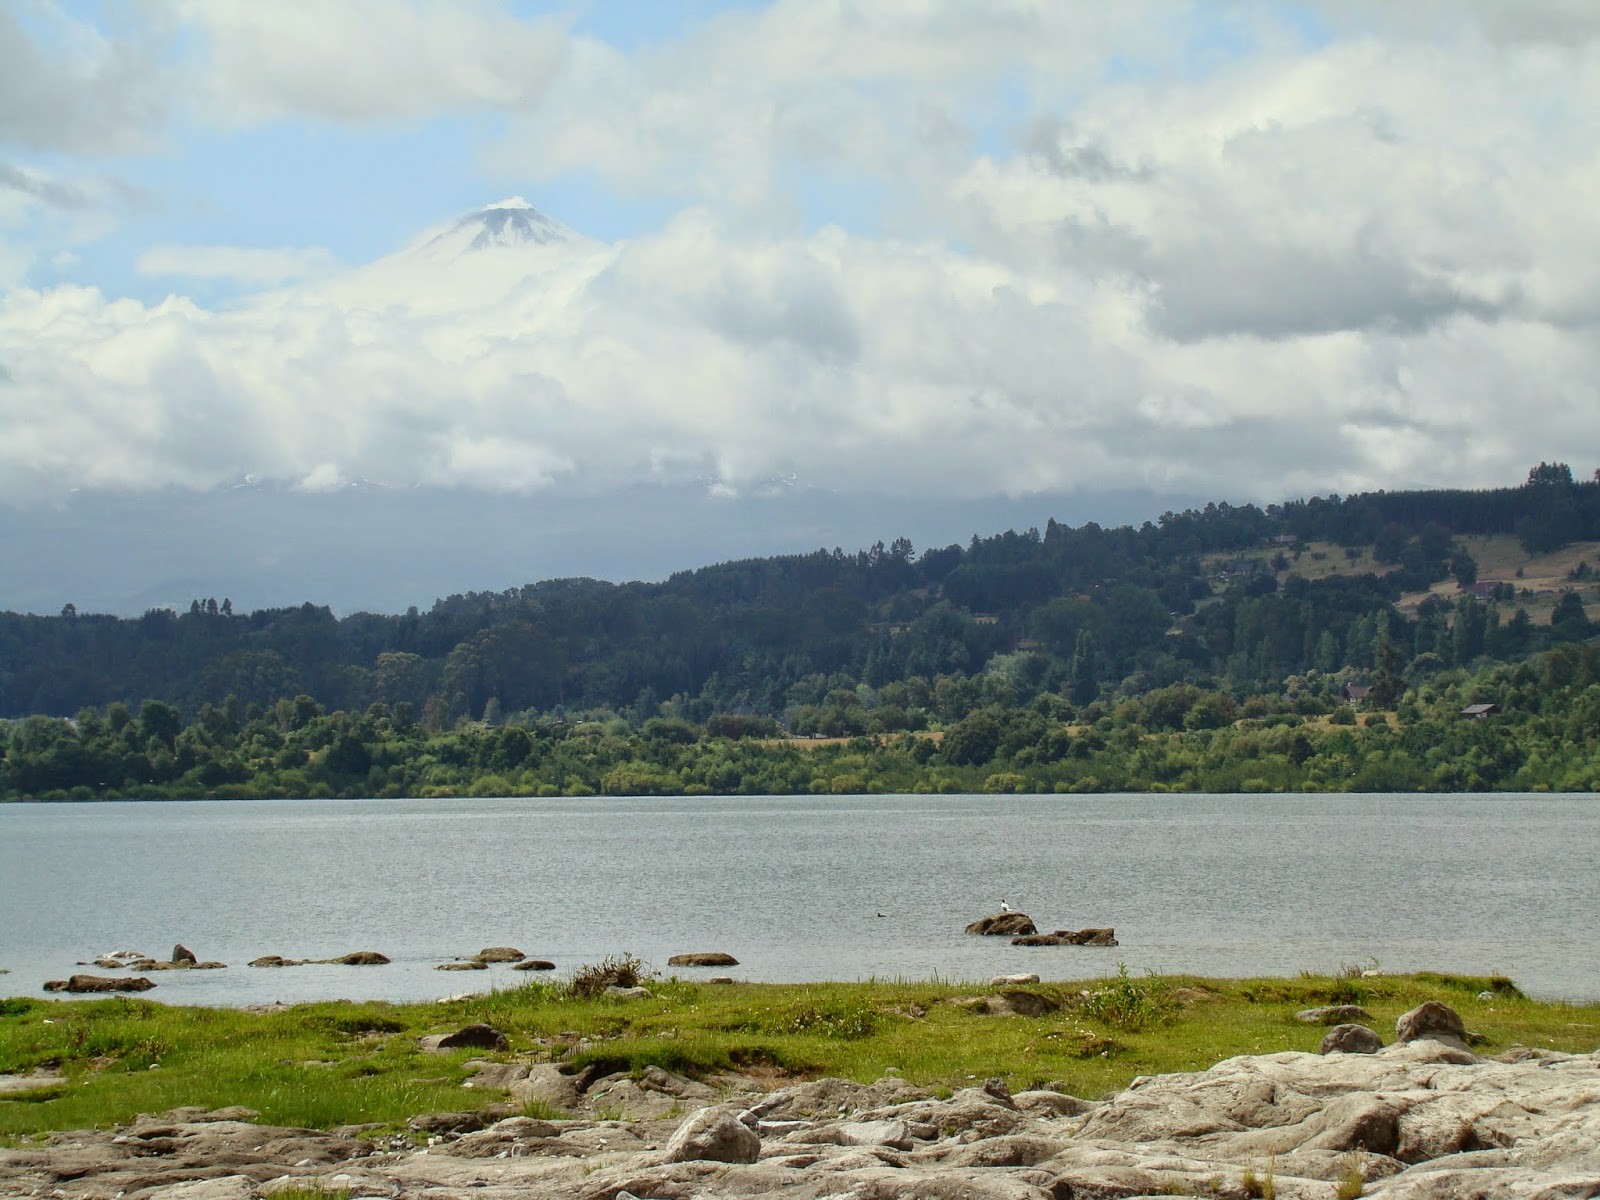 Lago e a pontinha do Vulcão Villarrica, escondido atrás das nuvens.